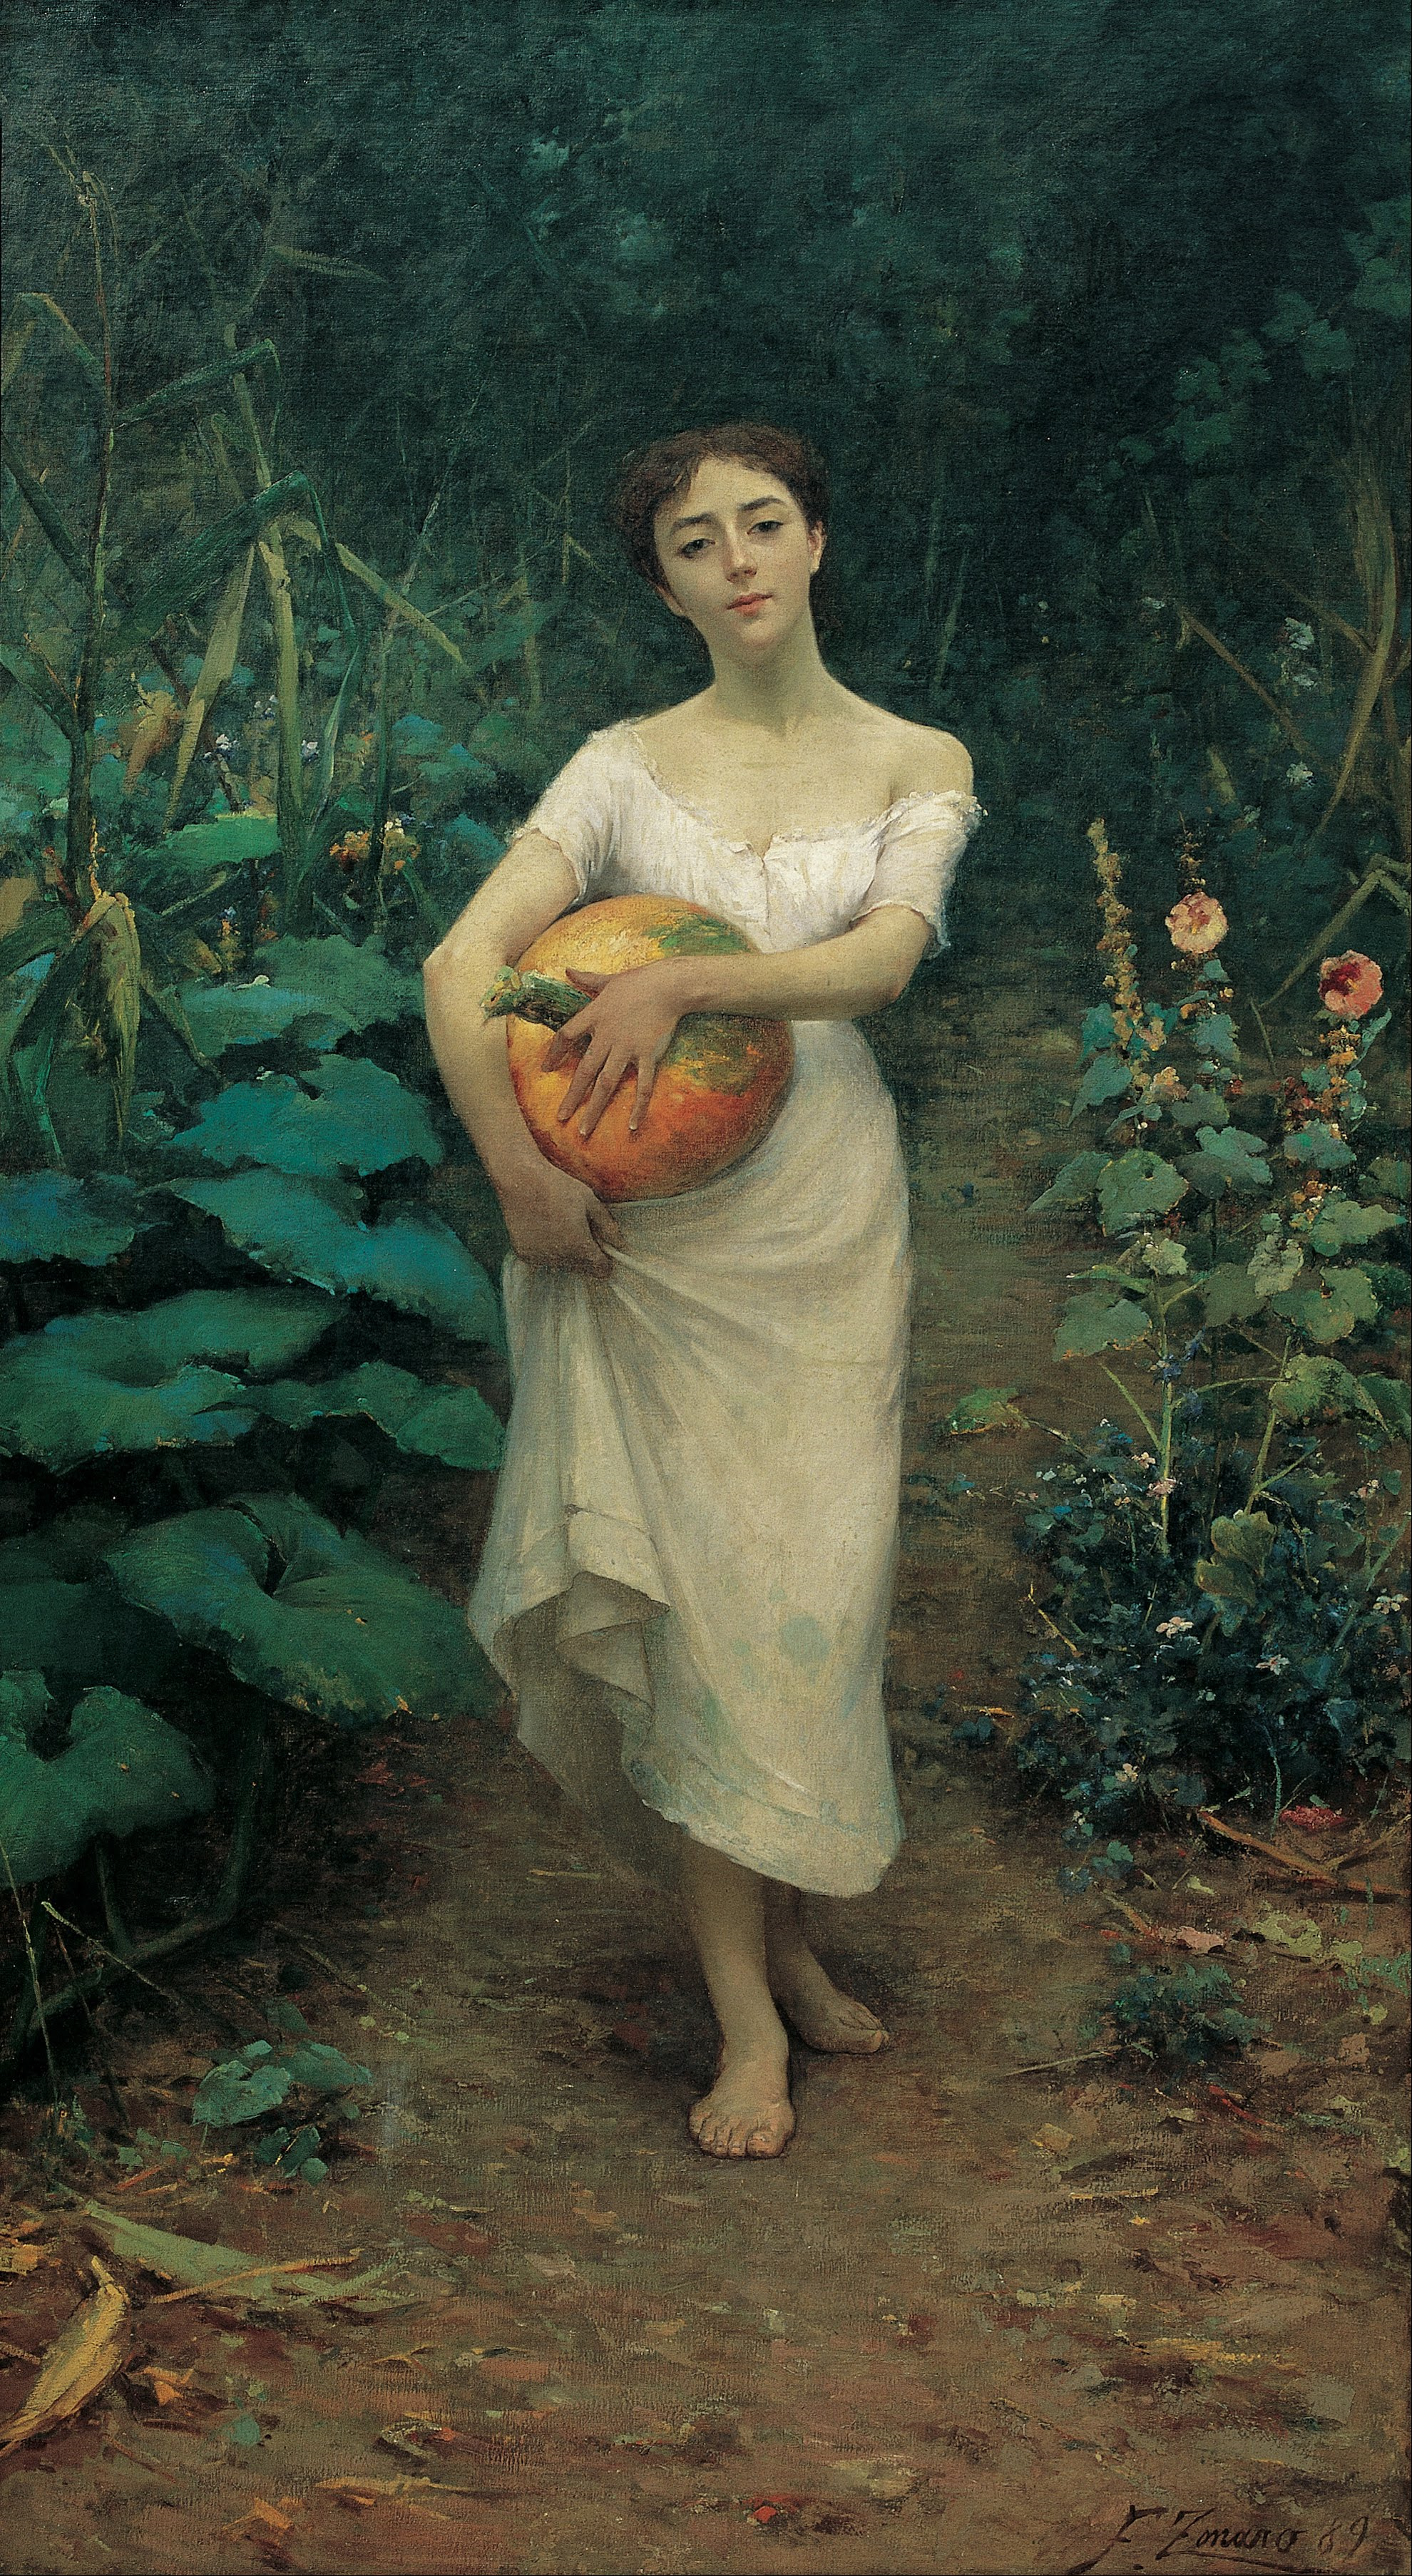 Young Girl Carrying a Pumpkin by Fausto Zonaro - 1889 - 137 x 245 cm Sakıp Sabancı Museum